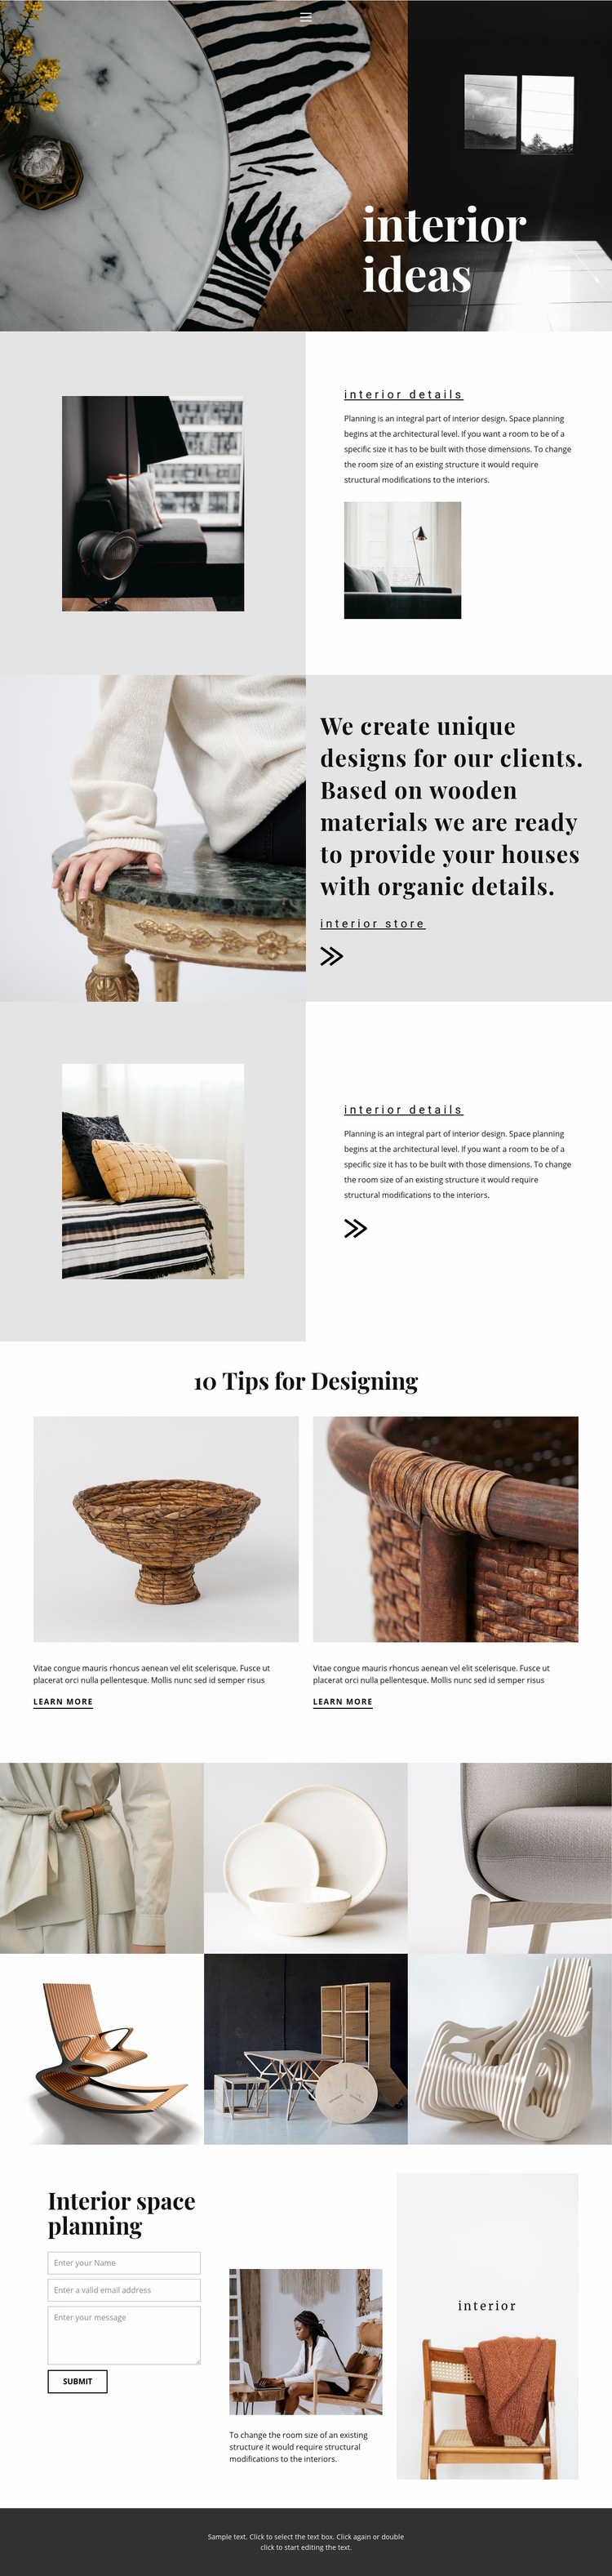 New interior ideas Web Page Design